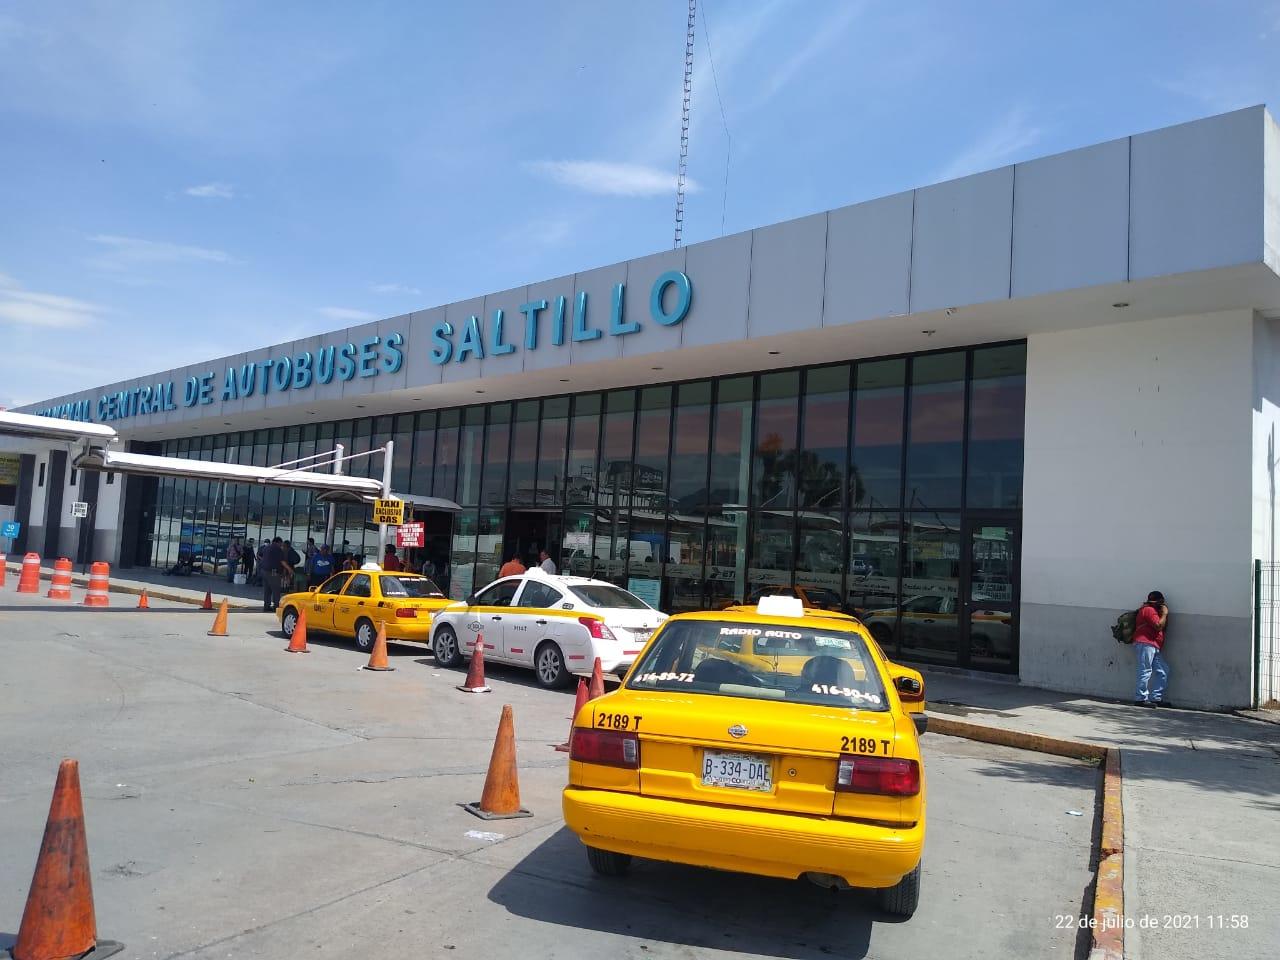 De acuerdo a titular, Héctor Gutiérrez, en Saltillo no existe aún esta prohibición, como se ha establecido en otros municipios, dónde se encuentran trasladando los grupos a cambio de dinero.

